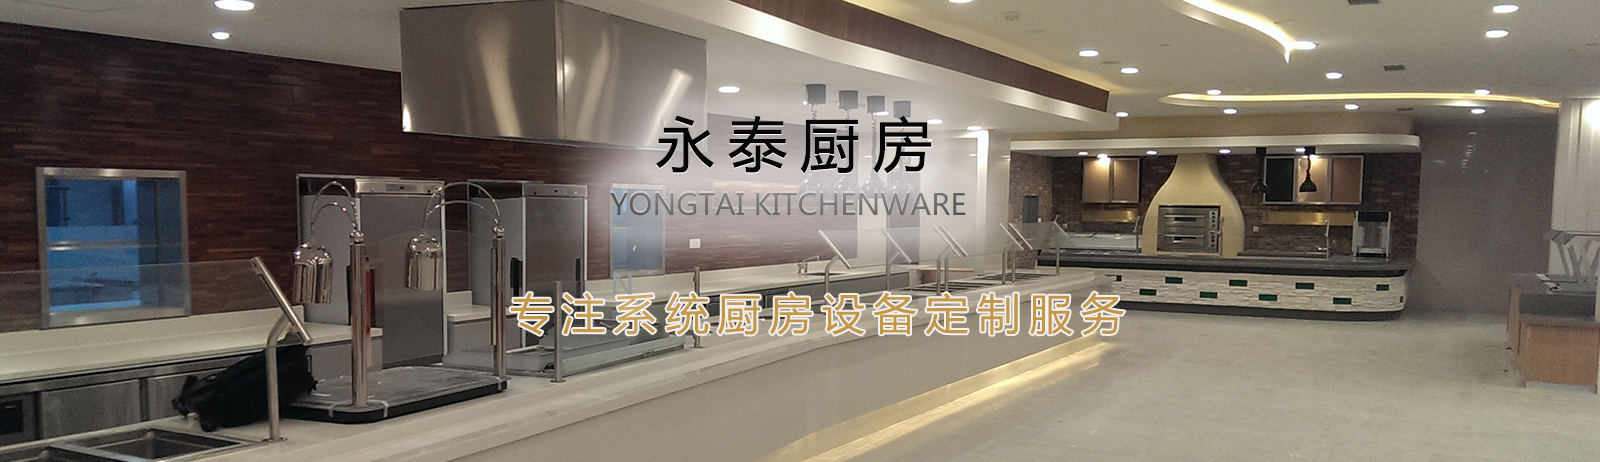 上海厨房设备